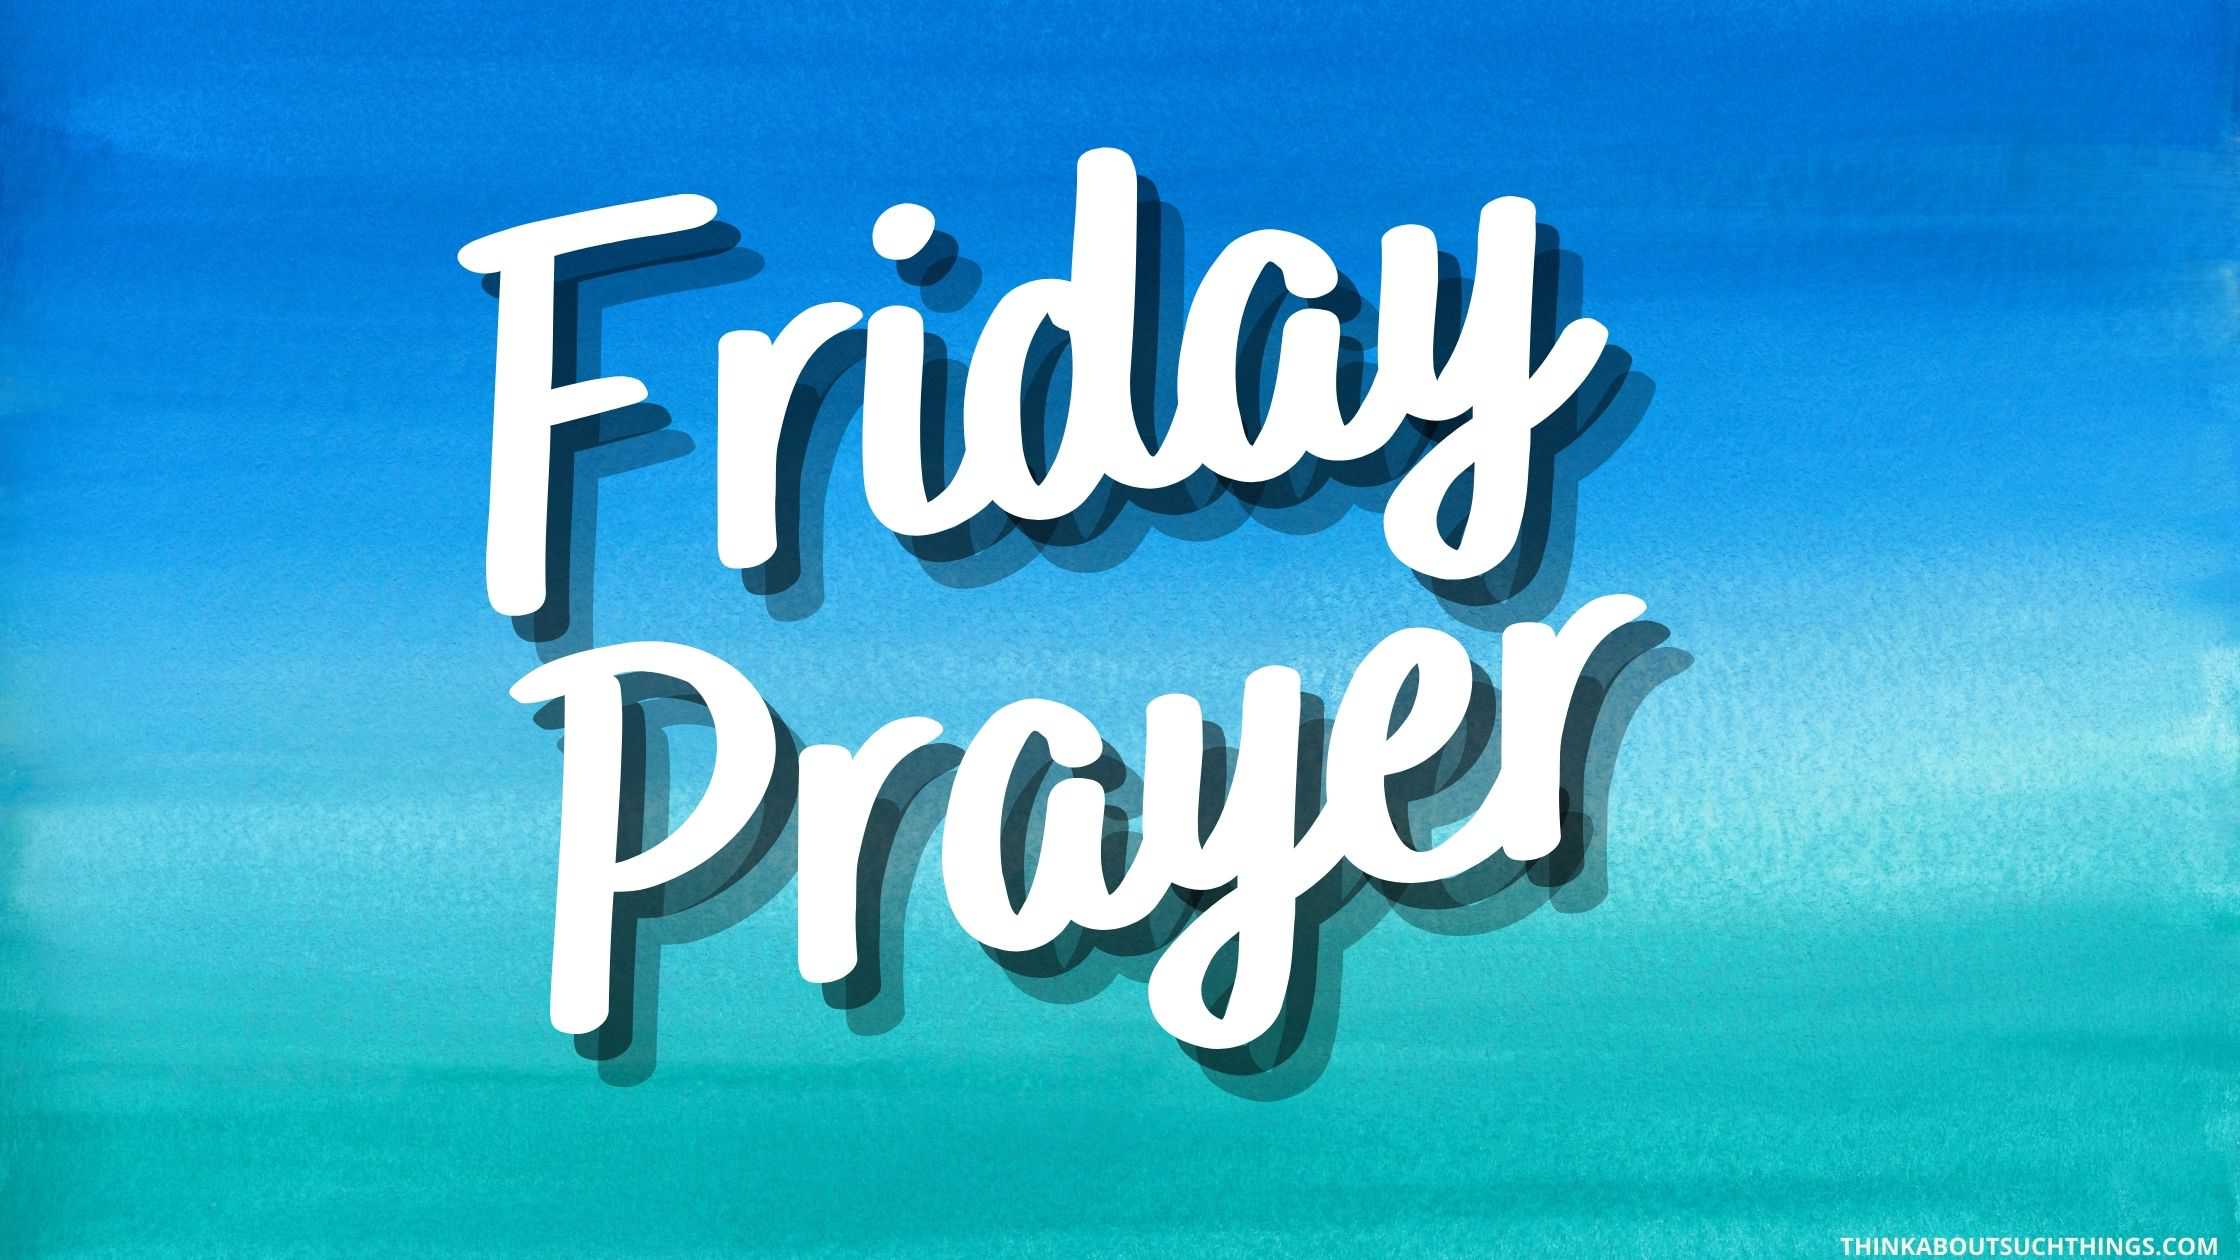 Happy Friday Prayer